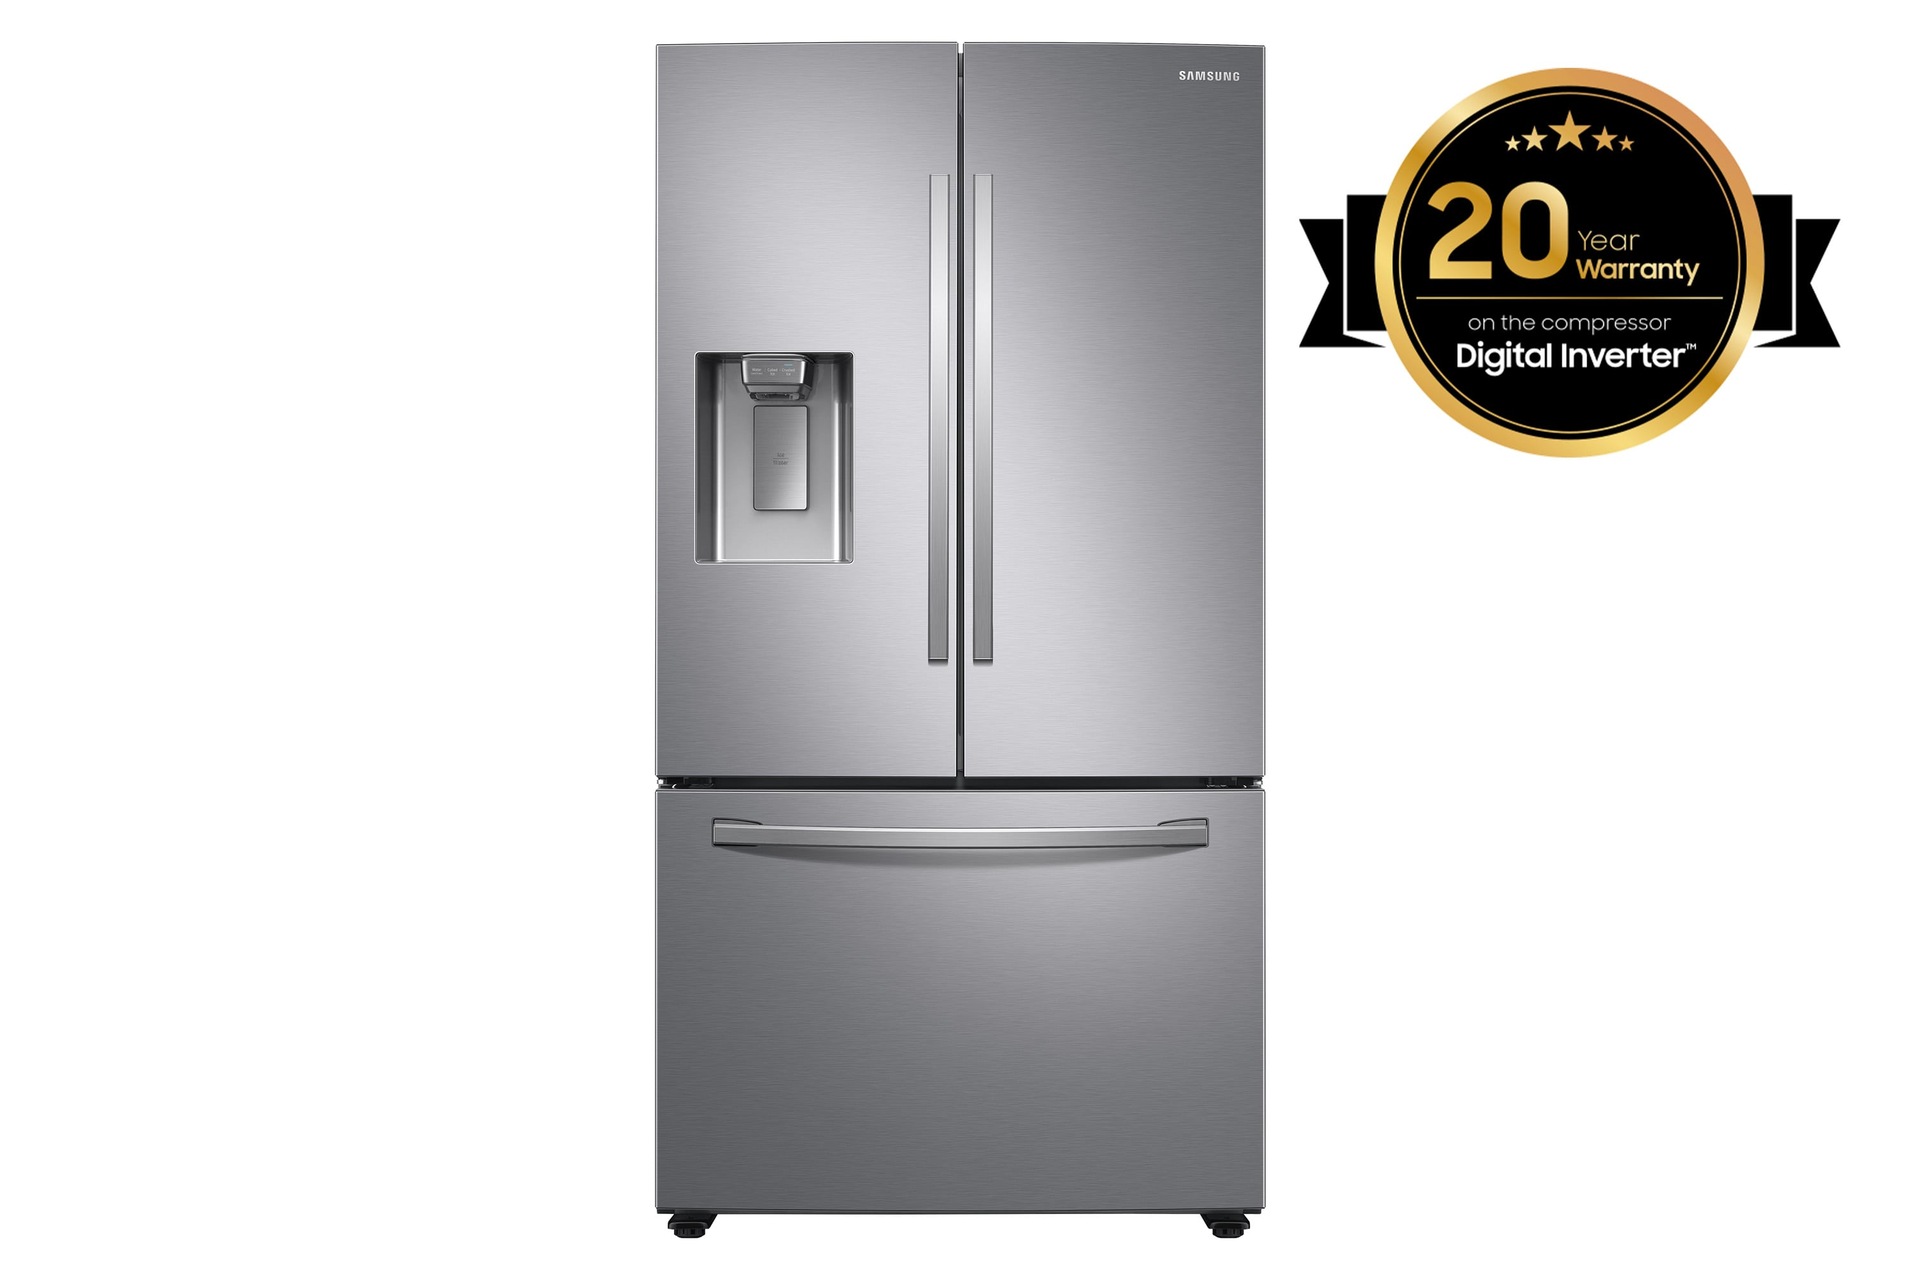 Réfrigérateur multi-portes Samsung 630L, Froid Ventilé Plus